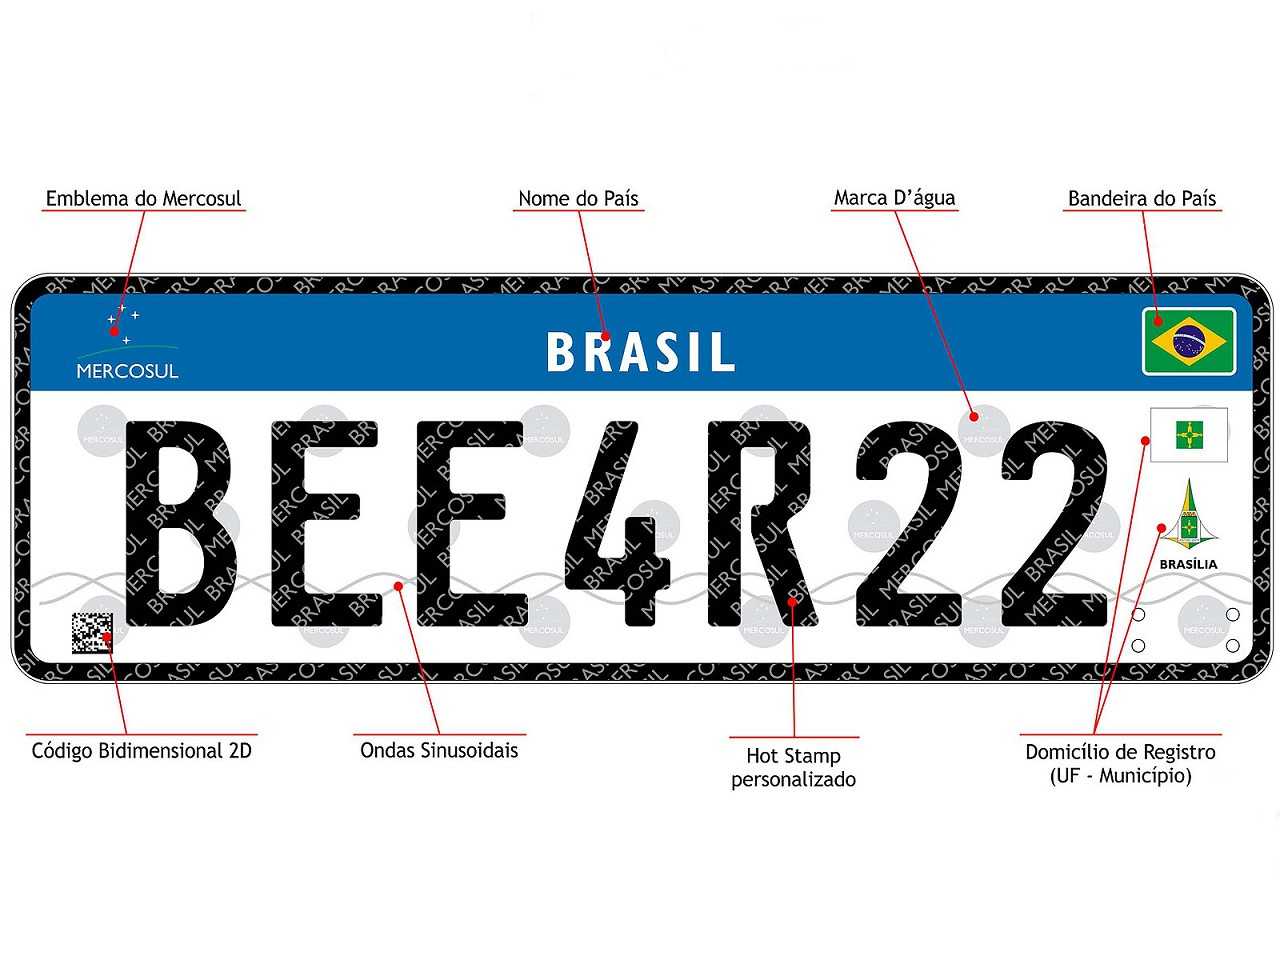 Placa destinada aos carros brasileiros seguindo o padrão que será adotado no Mercosul